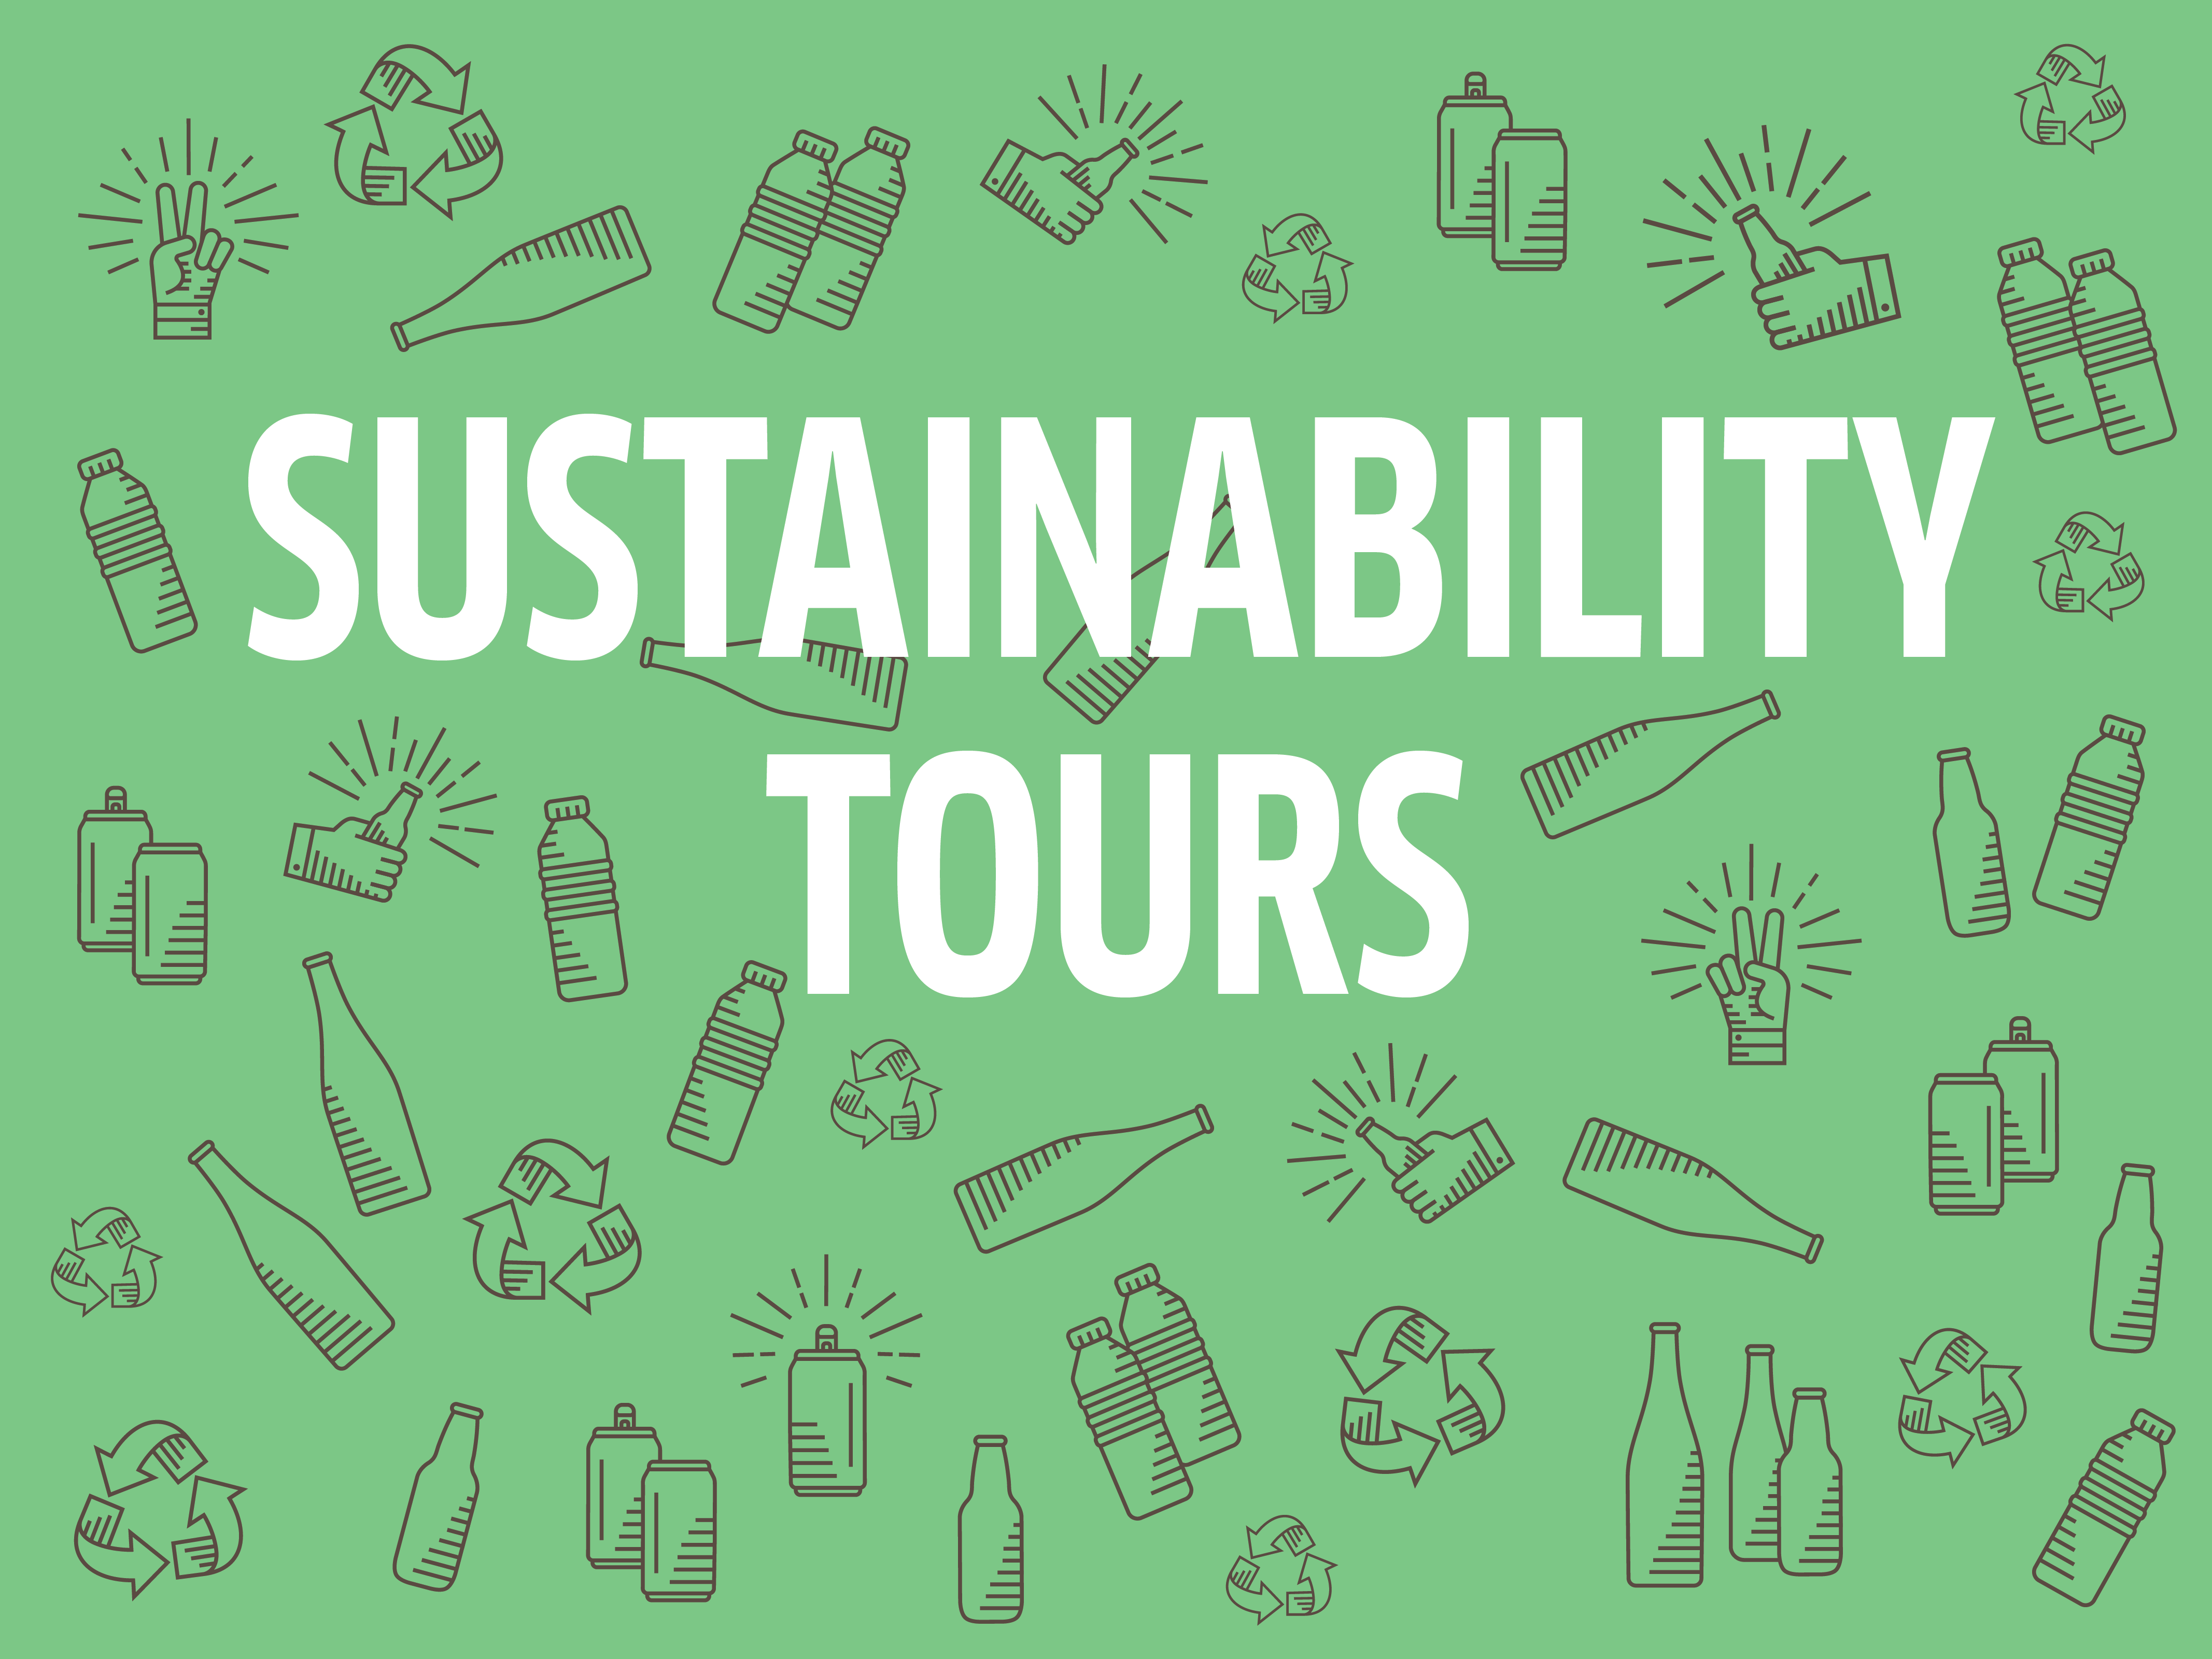 Sustainability tours